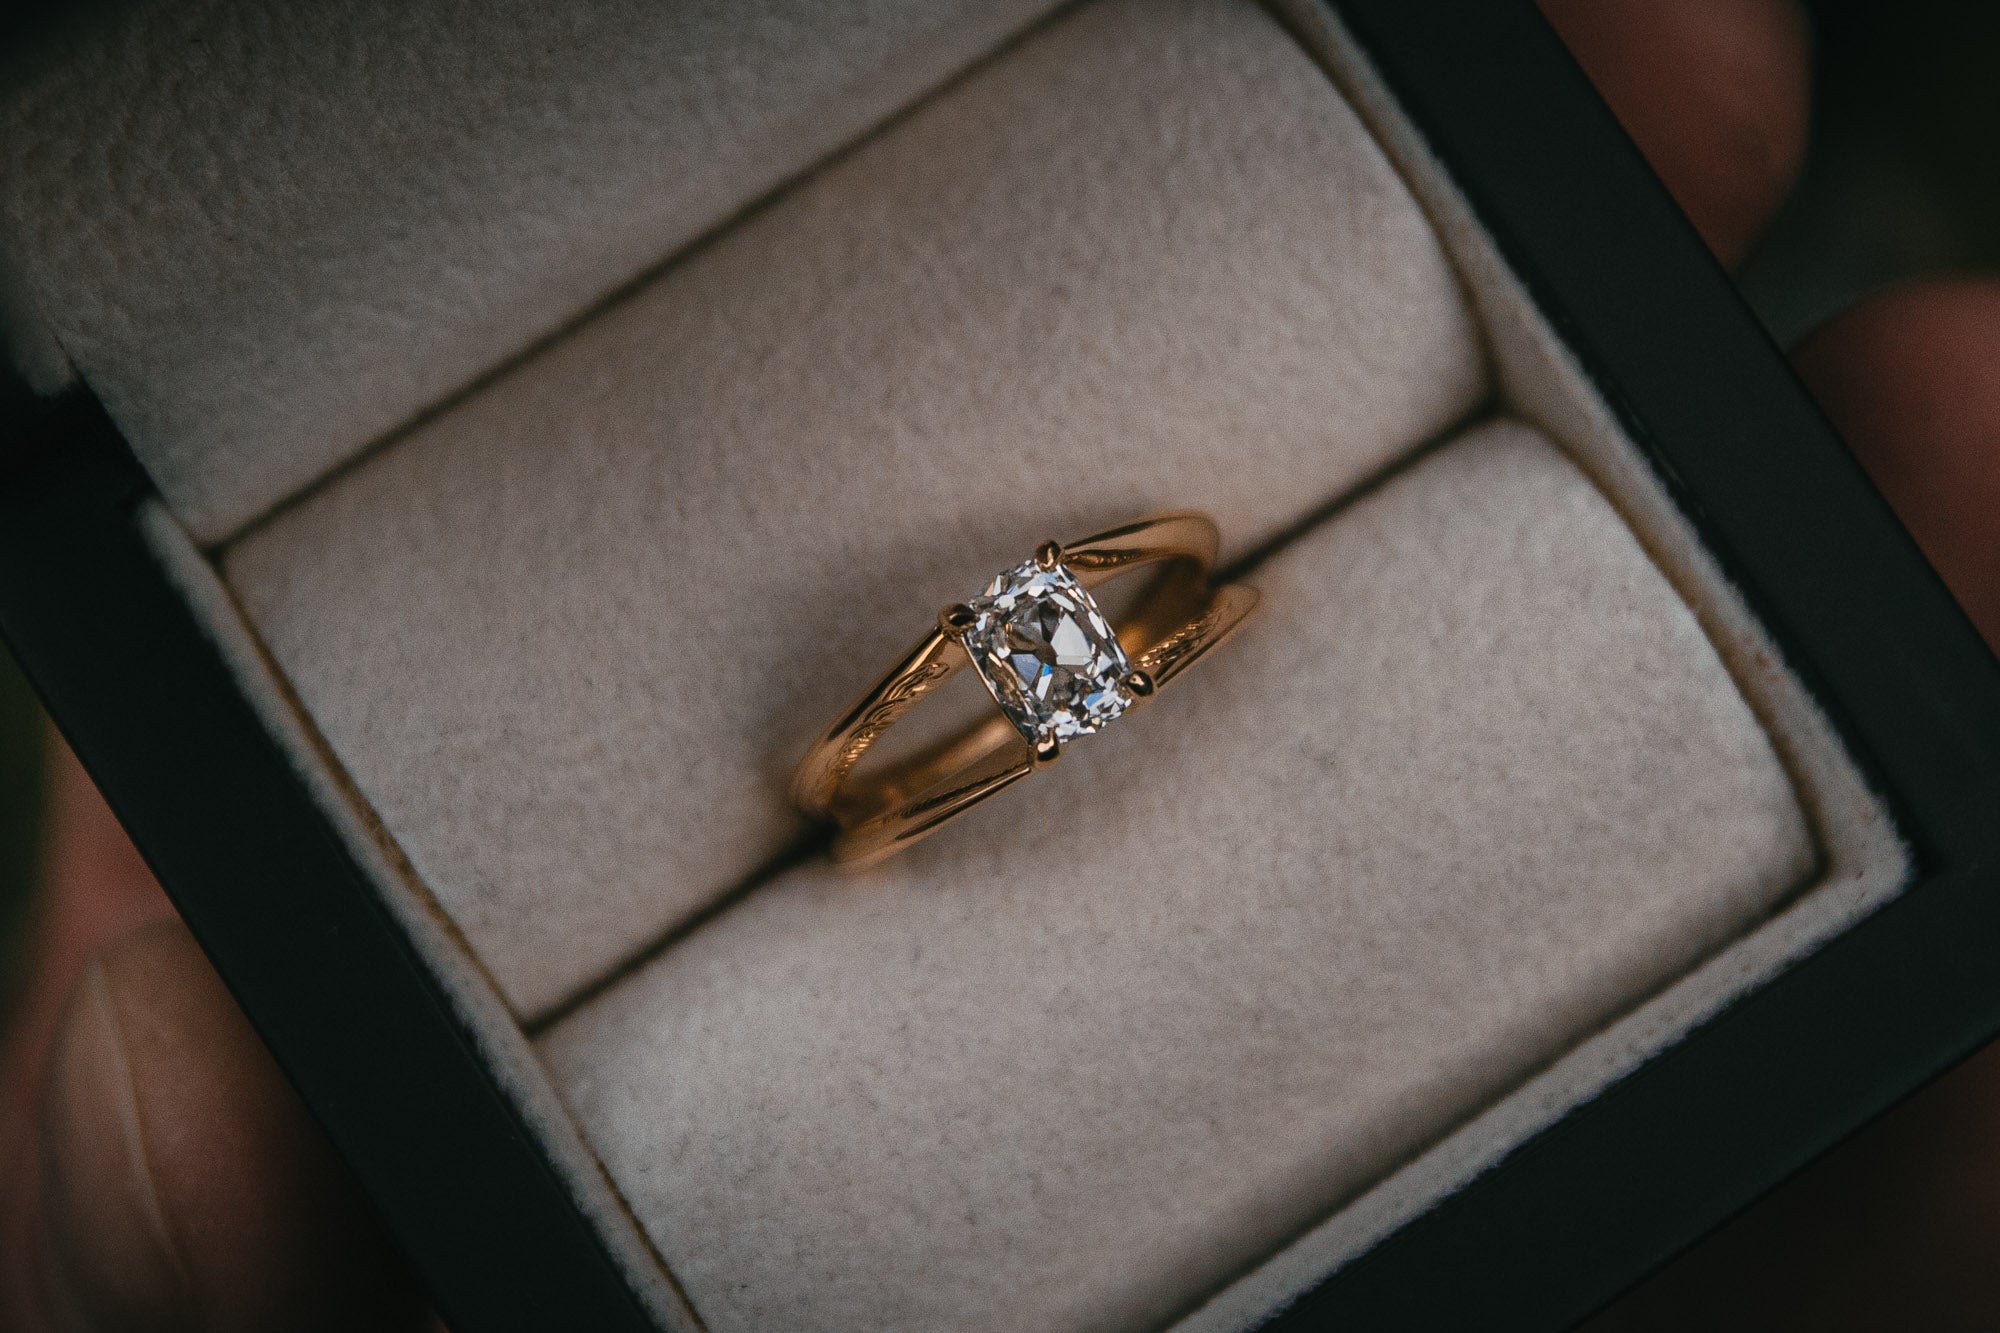 Bespoke split shank engraved diamond engagement ring